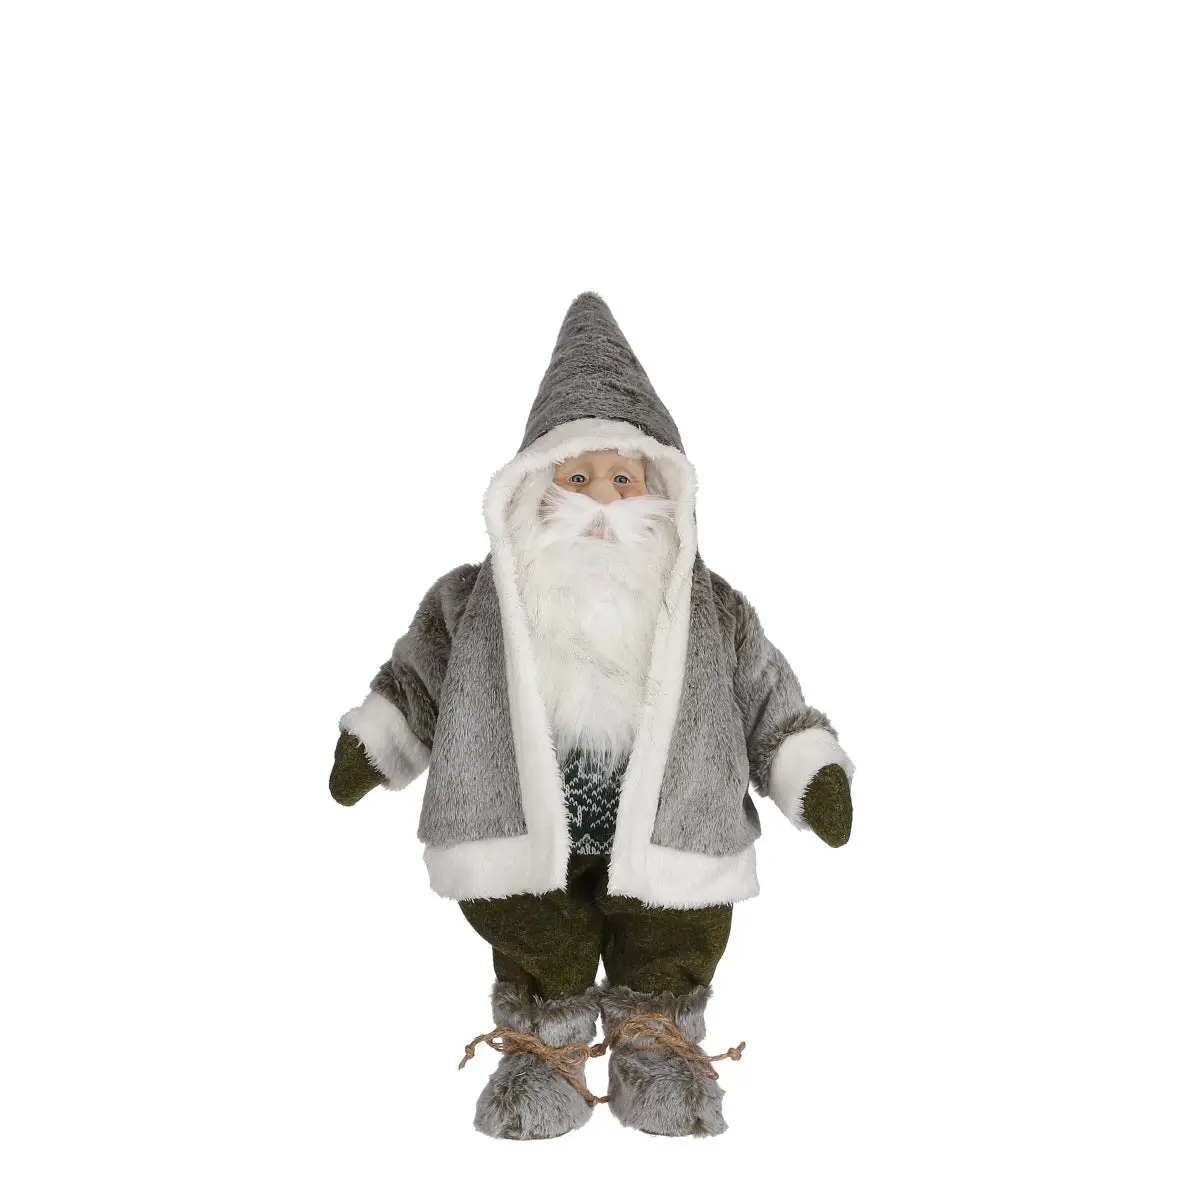 Qualität ist sehr gut Weihnachtsfigur Gnome